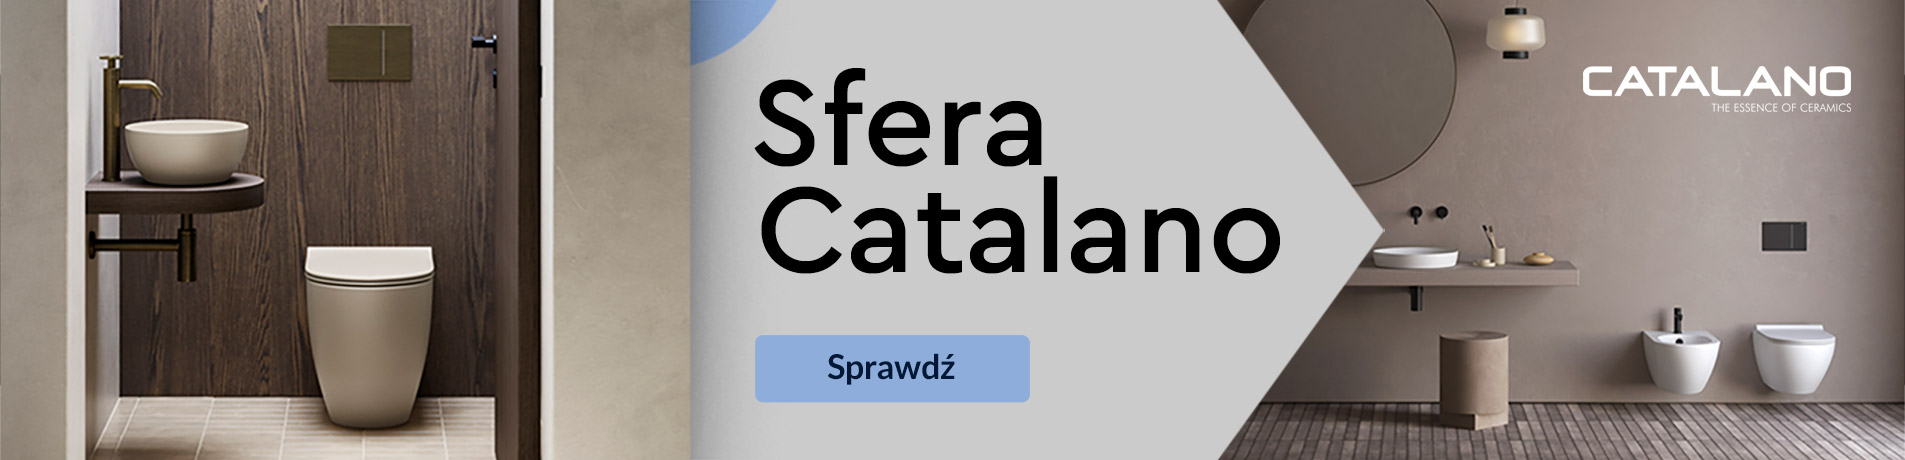 catalano-sfera-sg